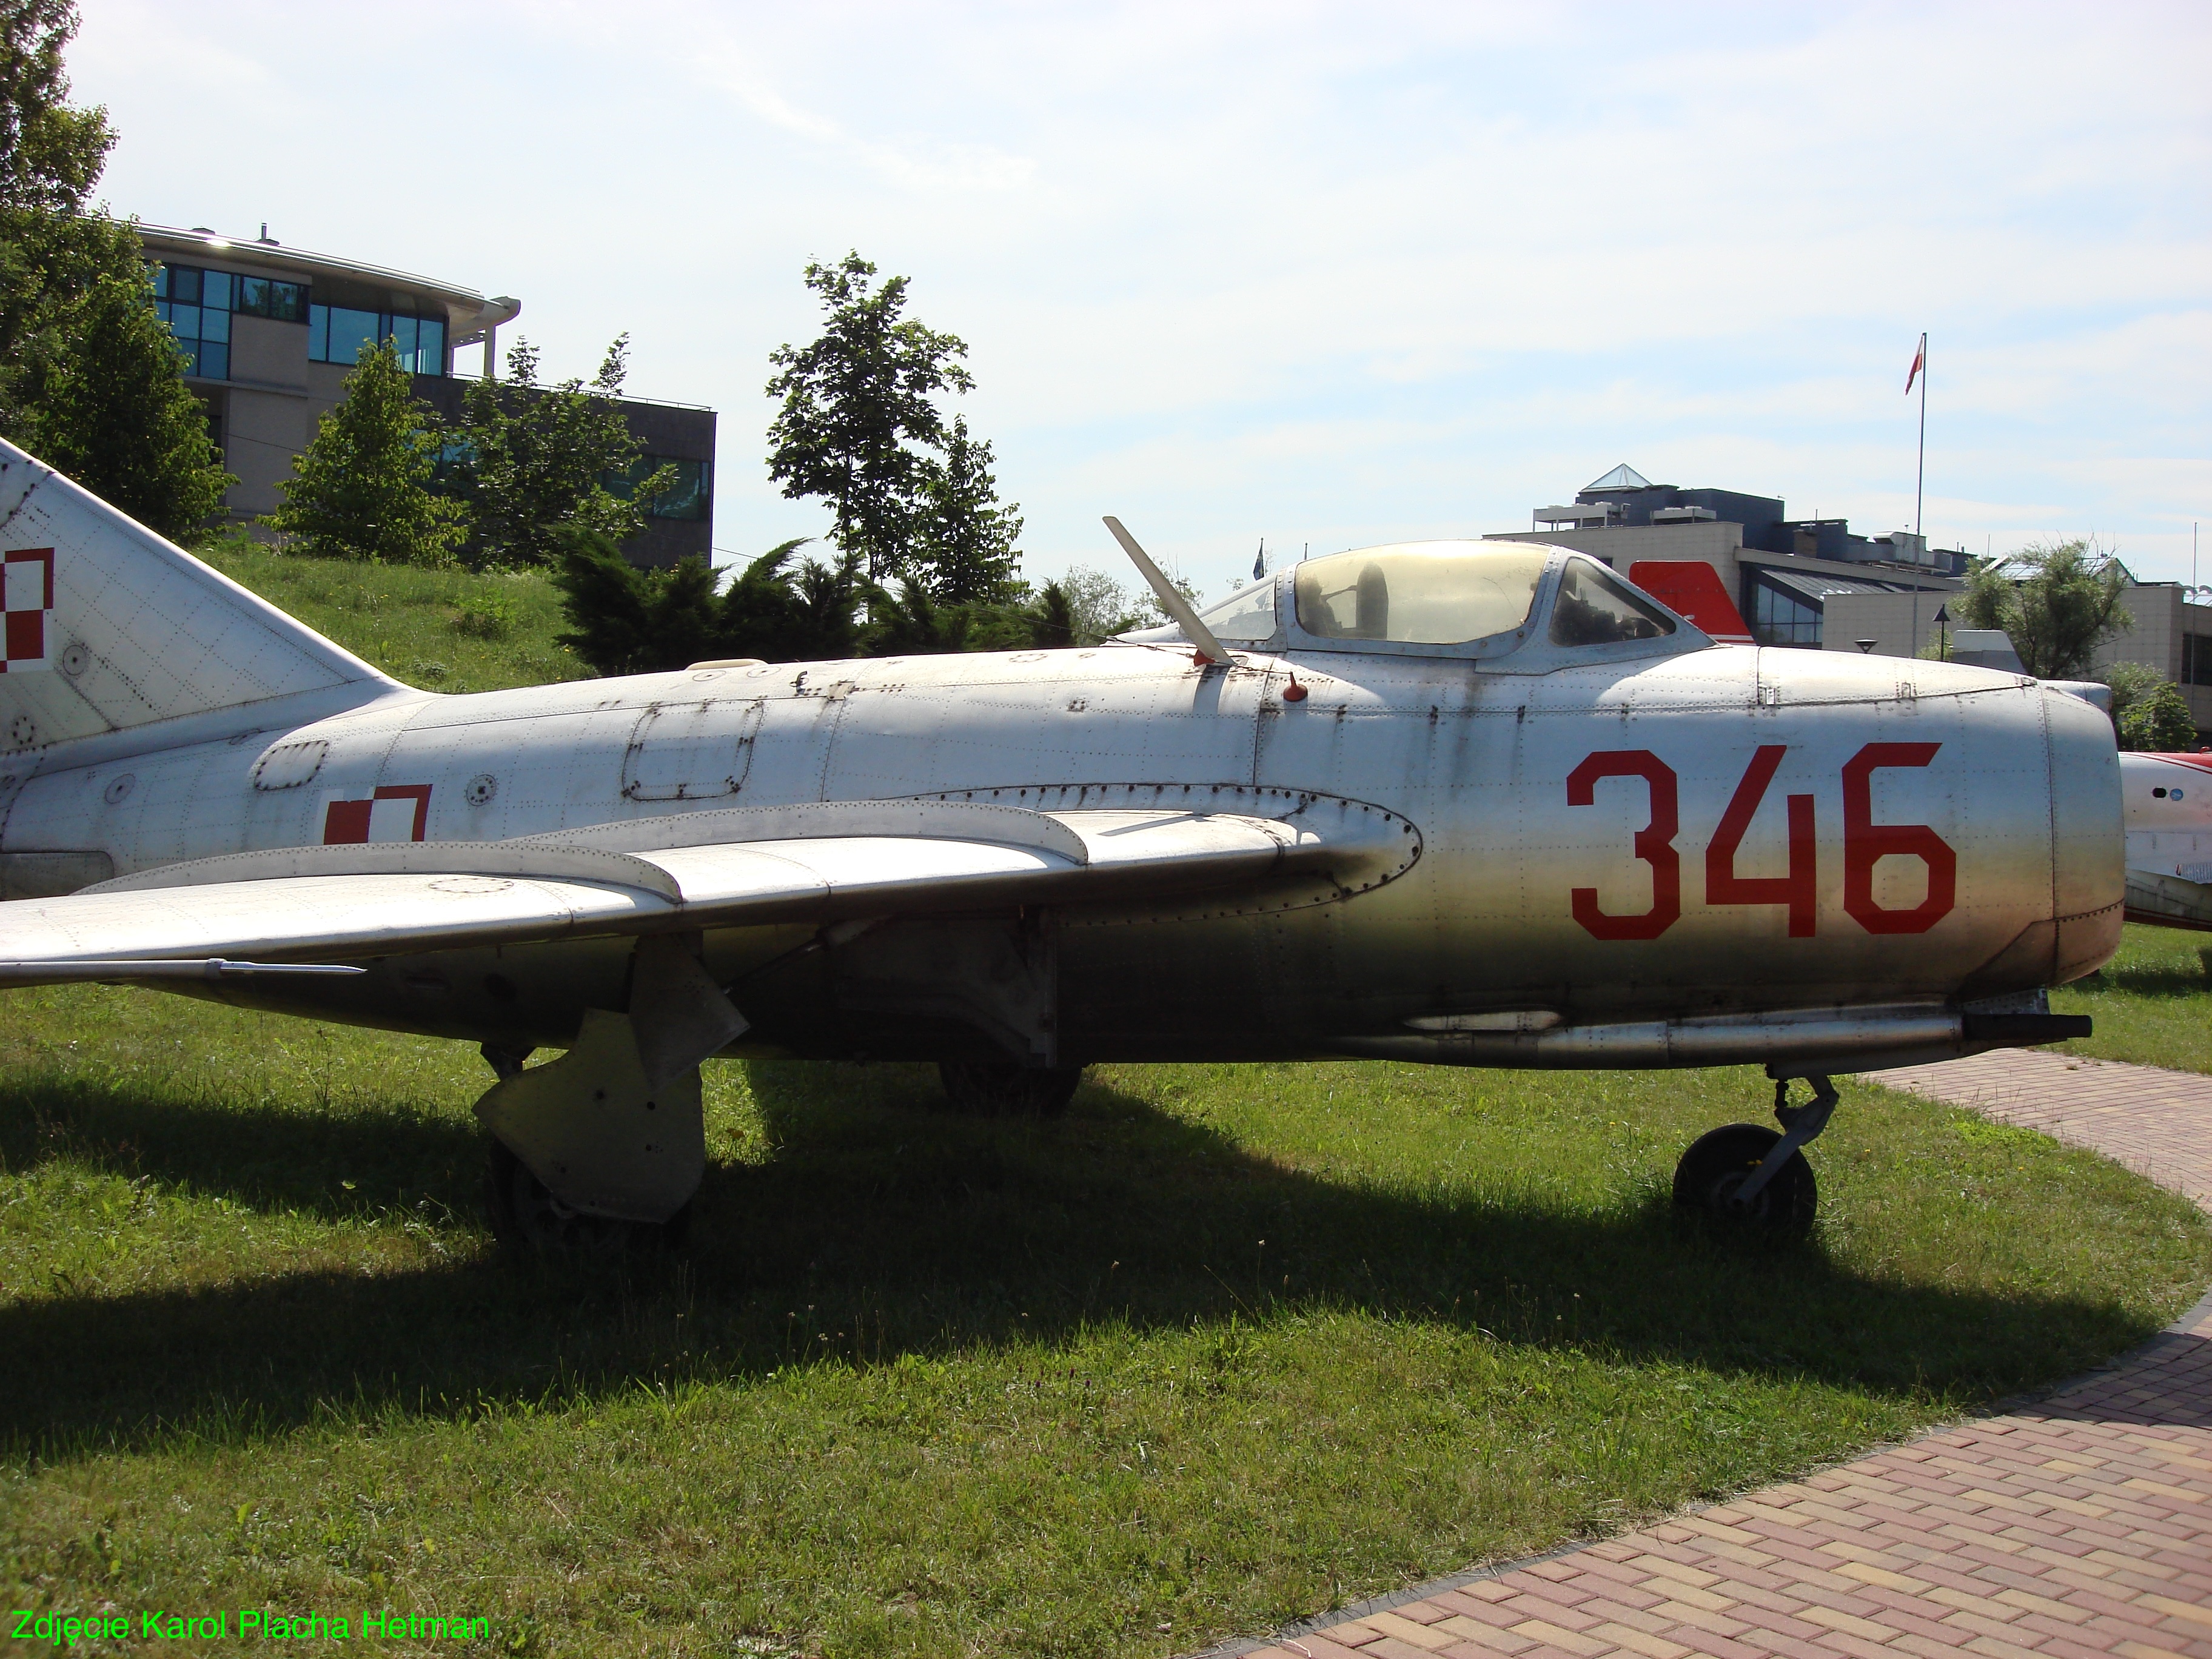 MiG-15 nb 346. 2008 year. Photo by Karol Placha Hetman